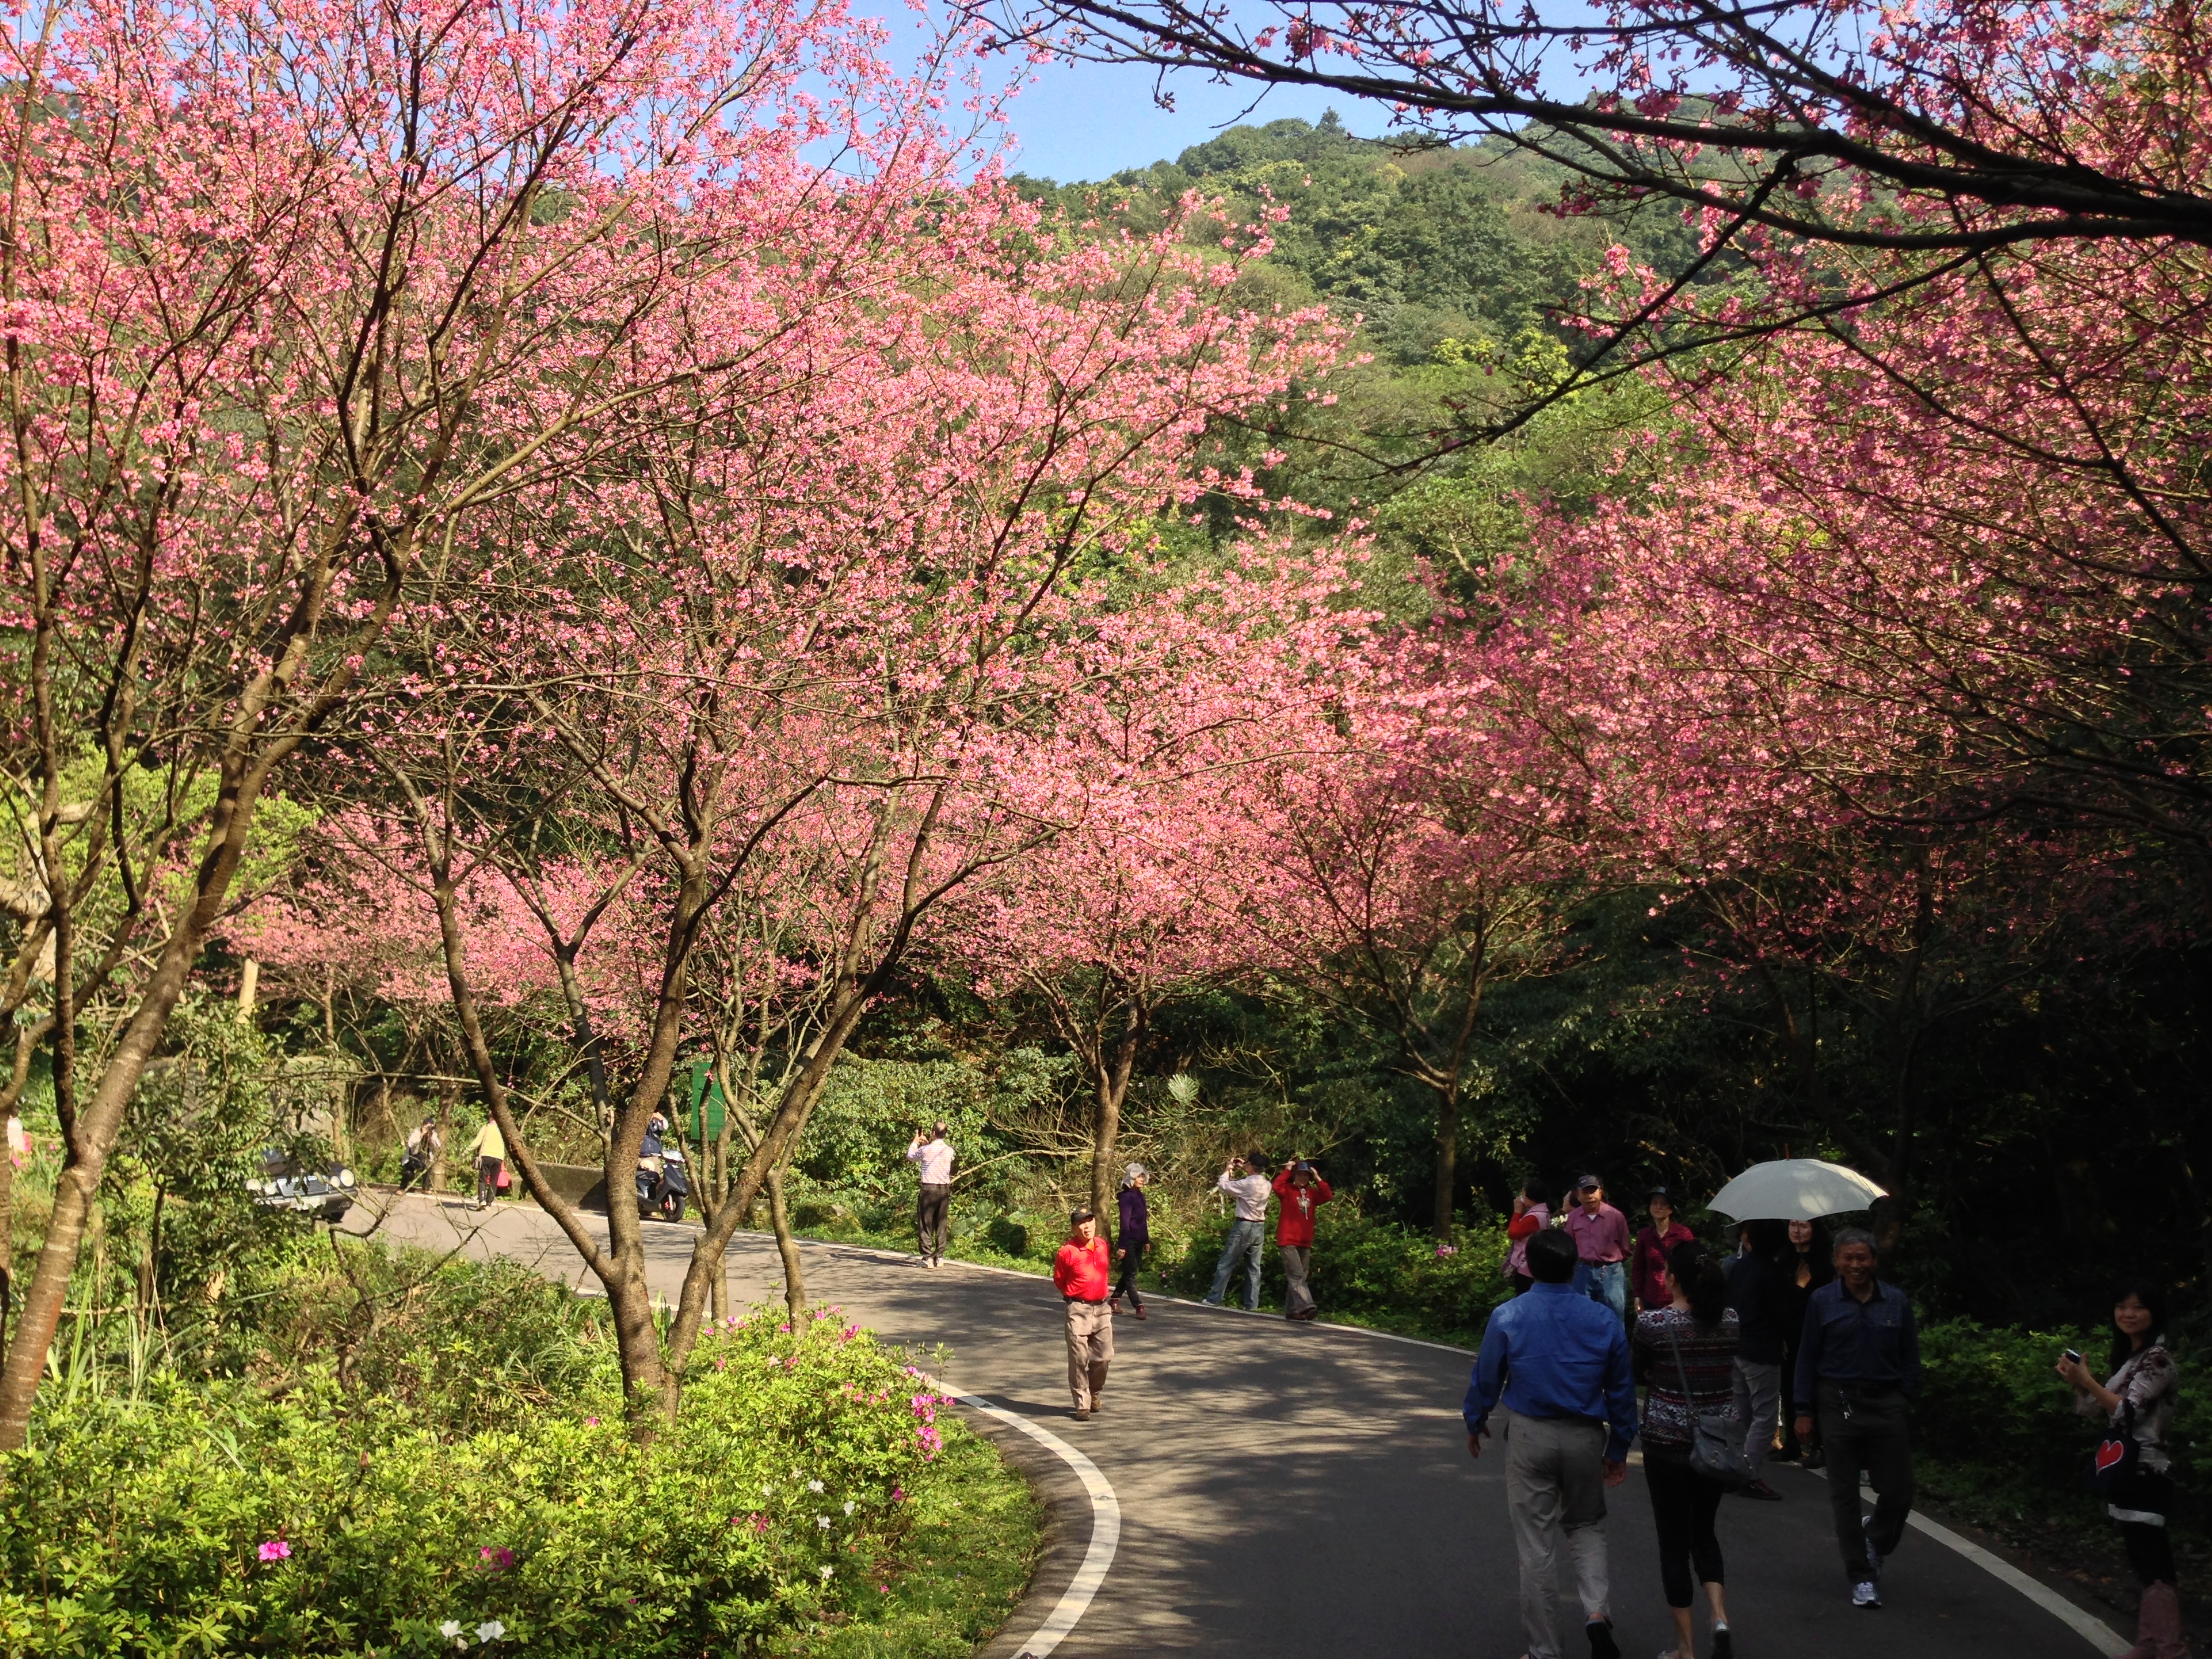 三芝青山路每年2-3月是櫻花綻放盛期